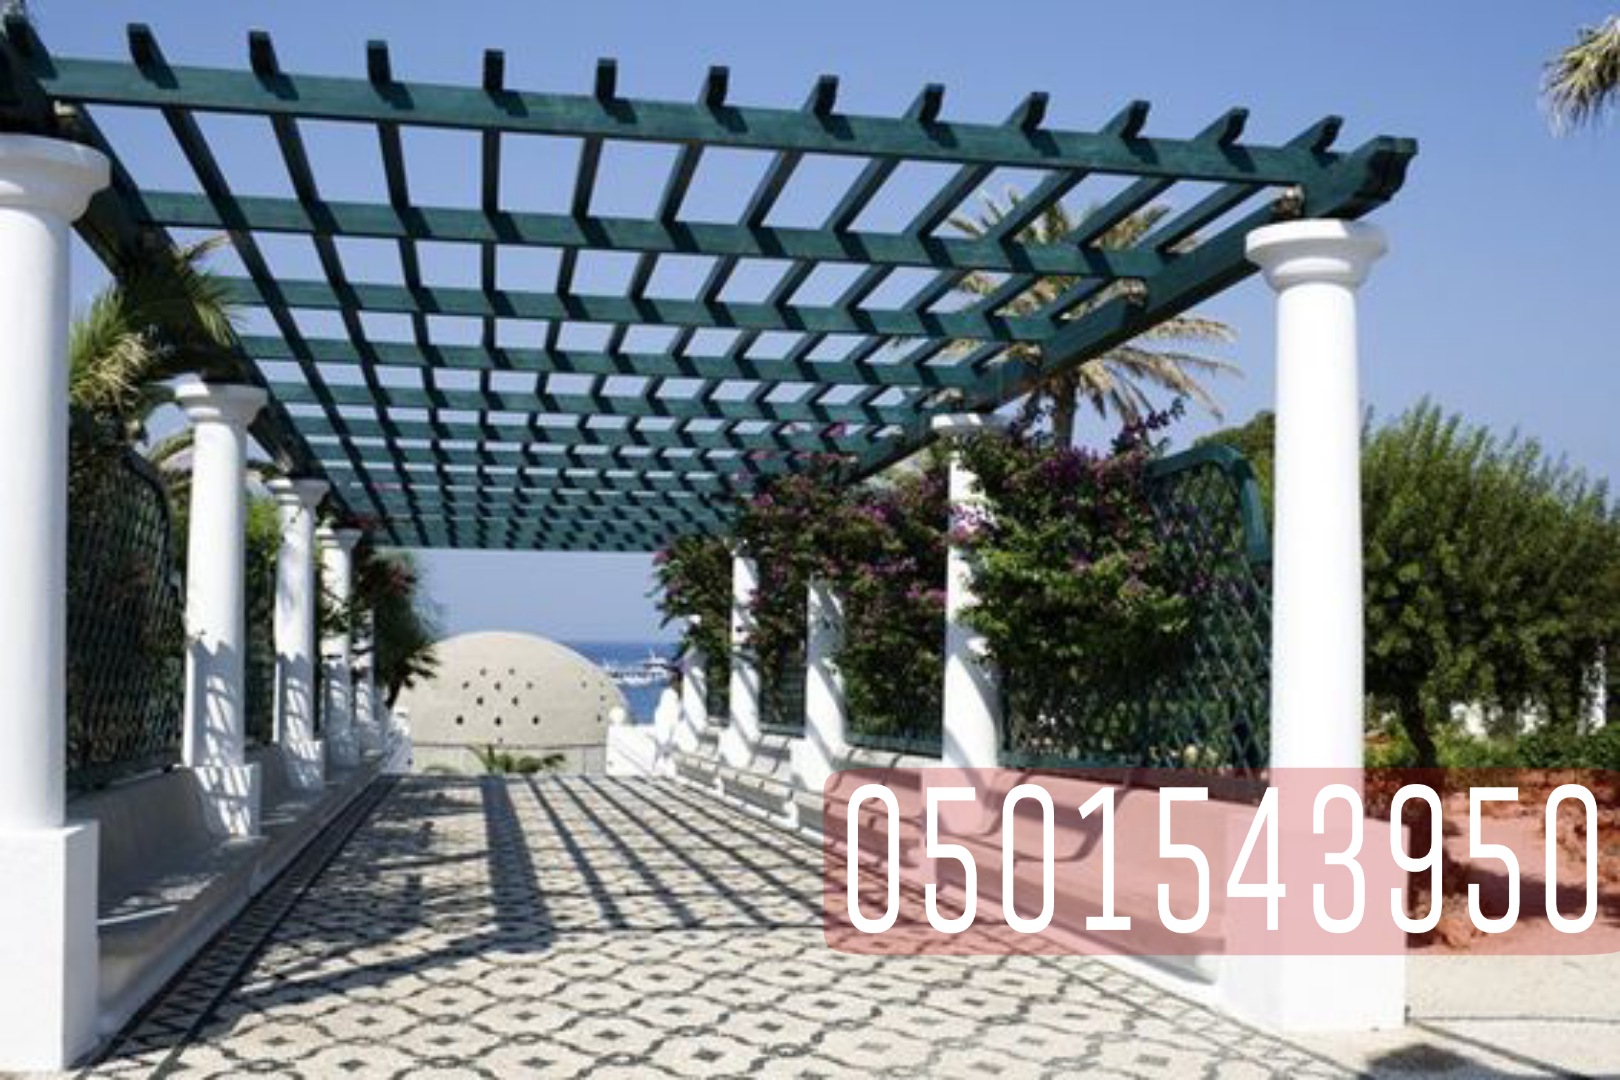 تركيب جلسات حدائق للمنازل بتصاميم انيقة في جدة , 0501543950 P_2151ti5br3